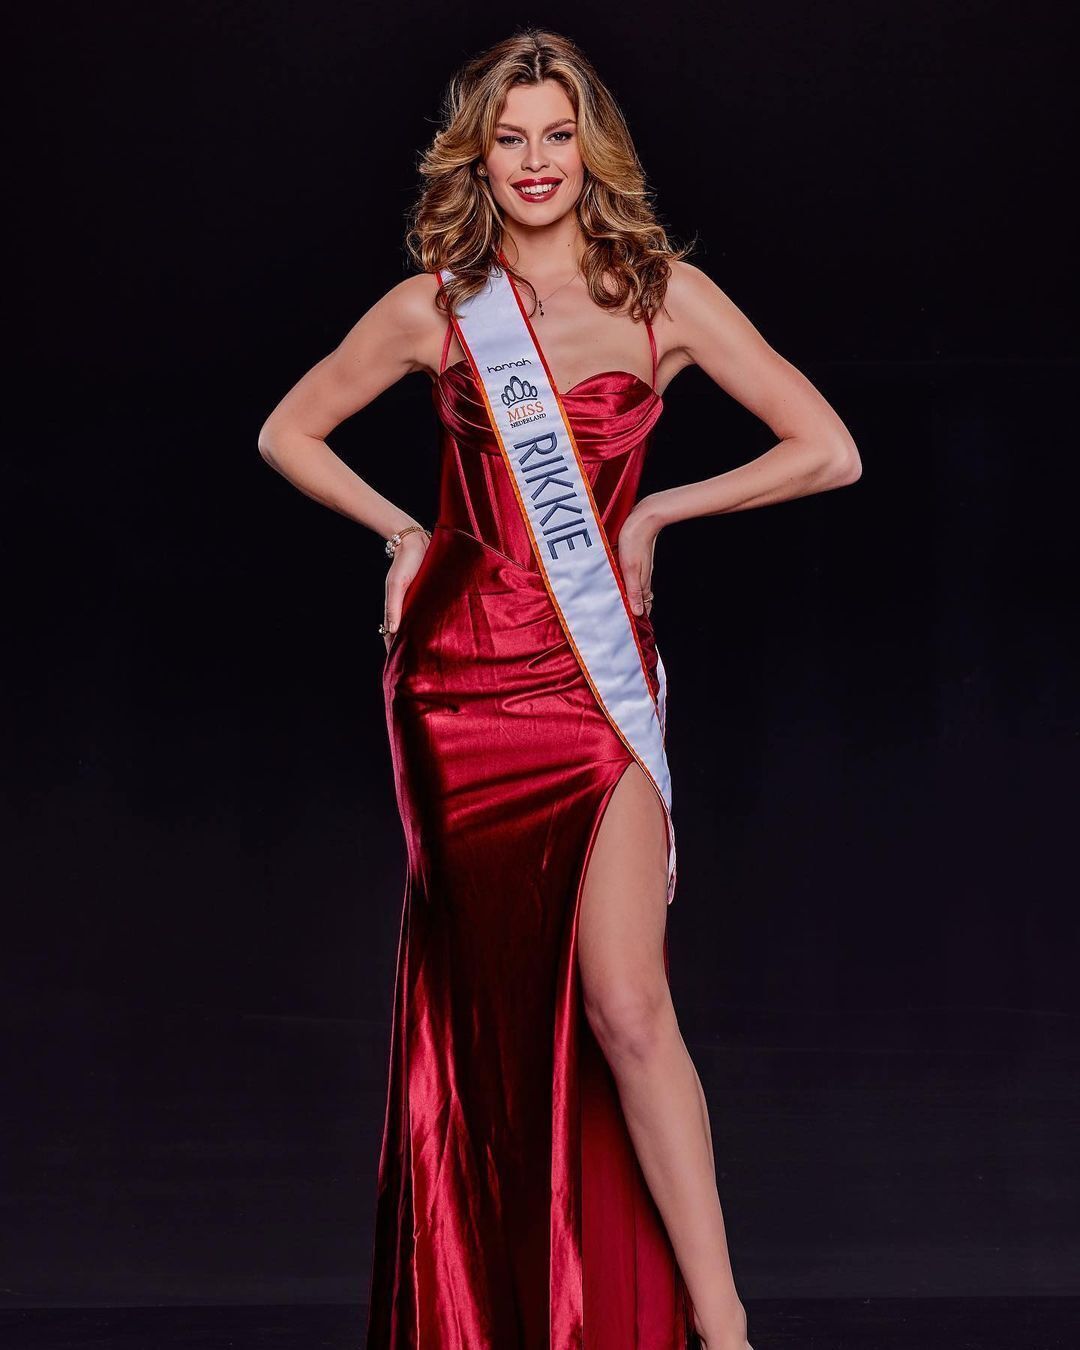 В конкурсе "Мисс Вселенная" будет участвовать трансгендерная женщина: как выглядит 22-летняя модель из Нидерландов